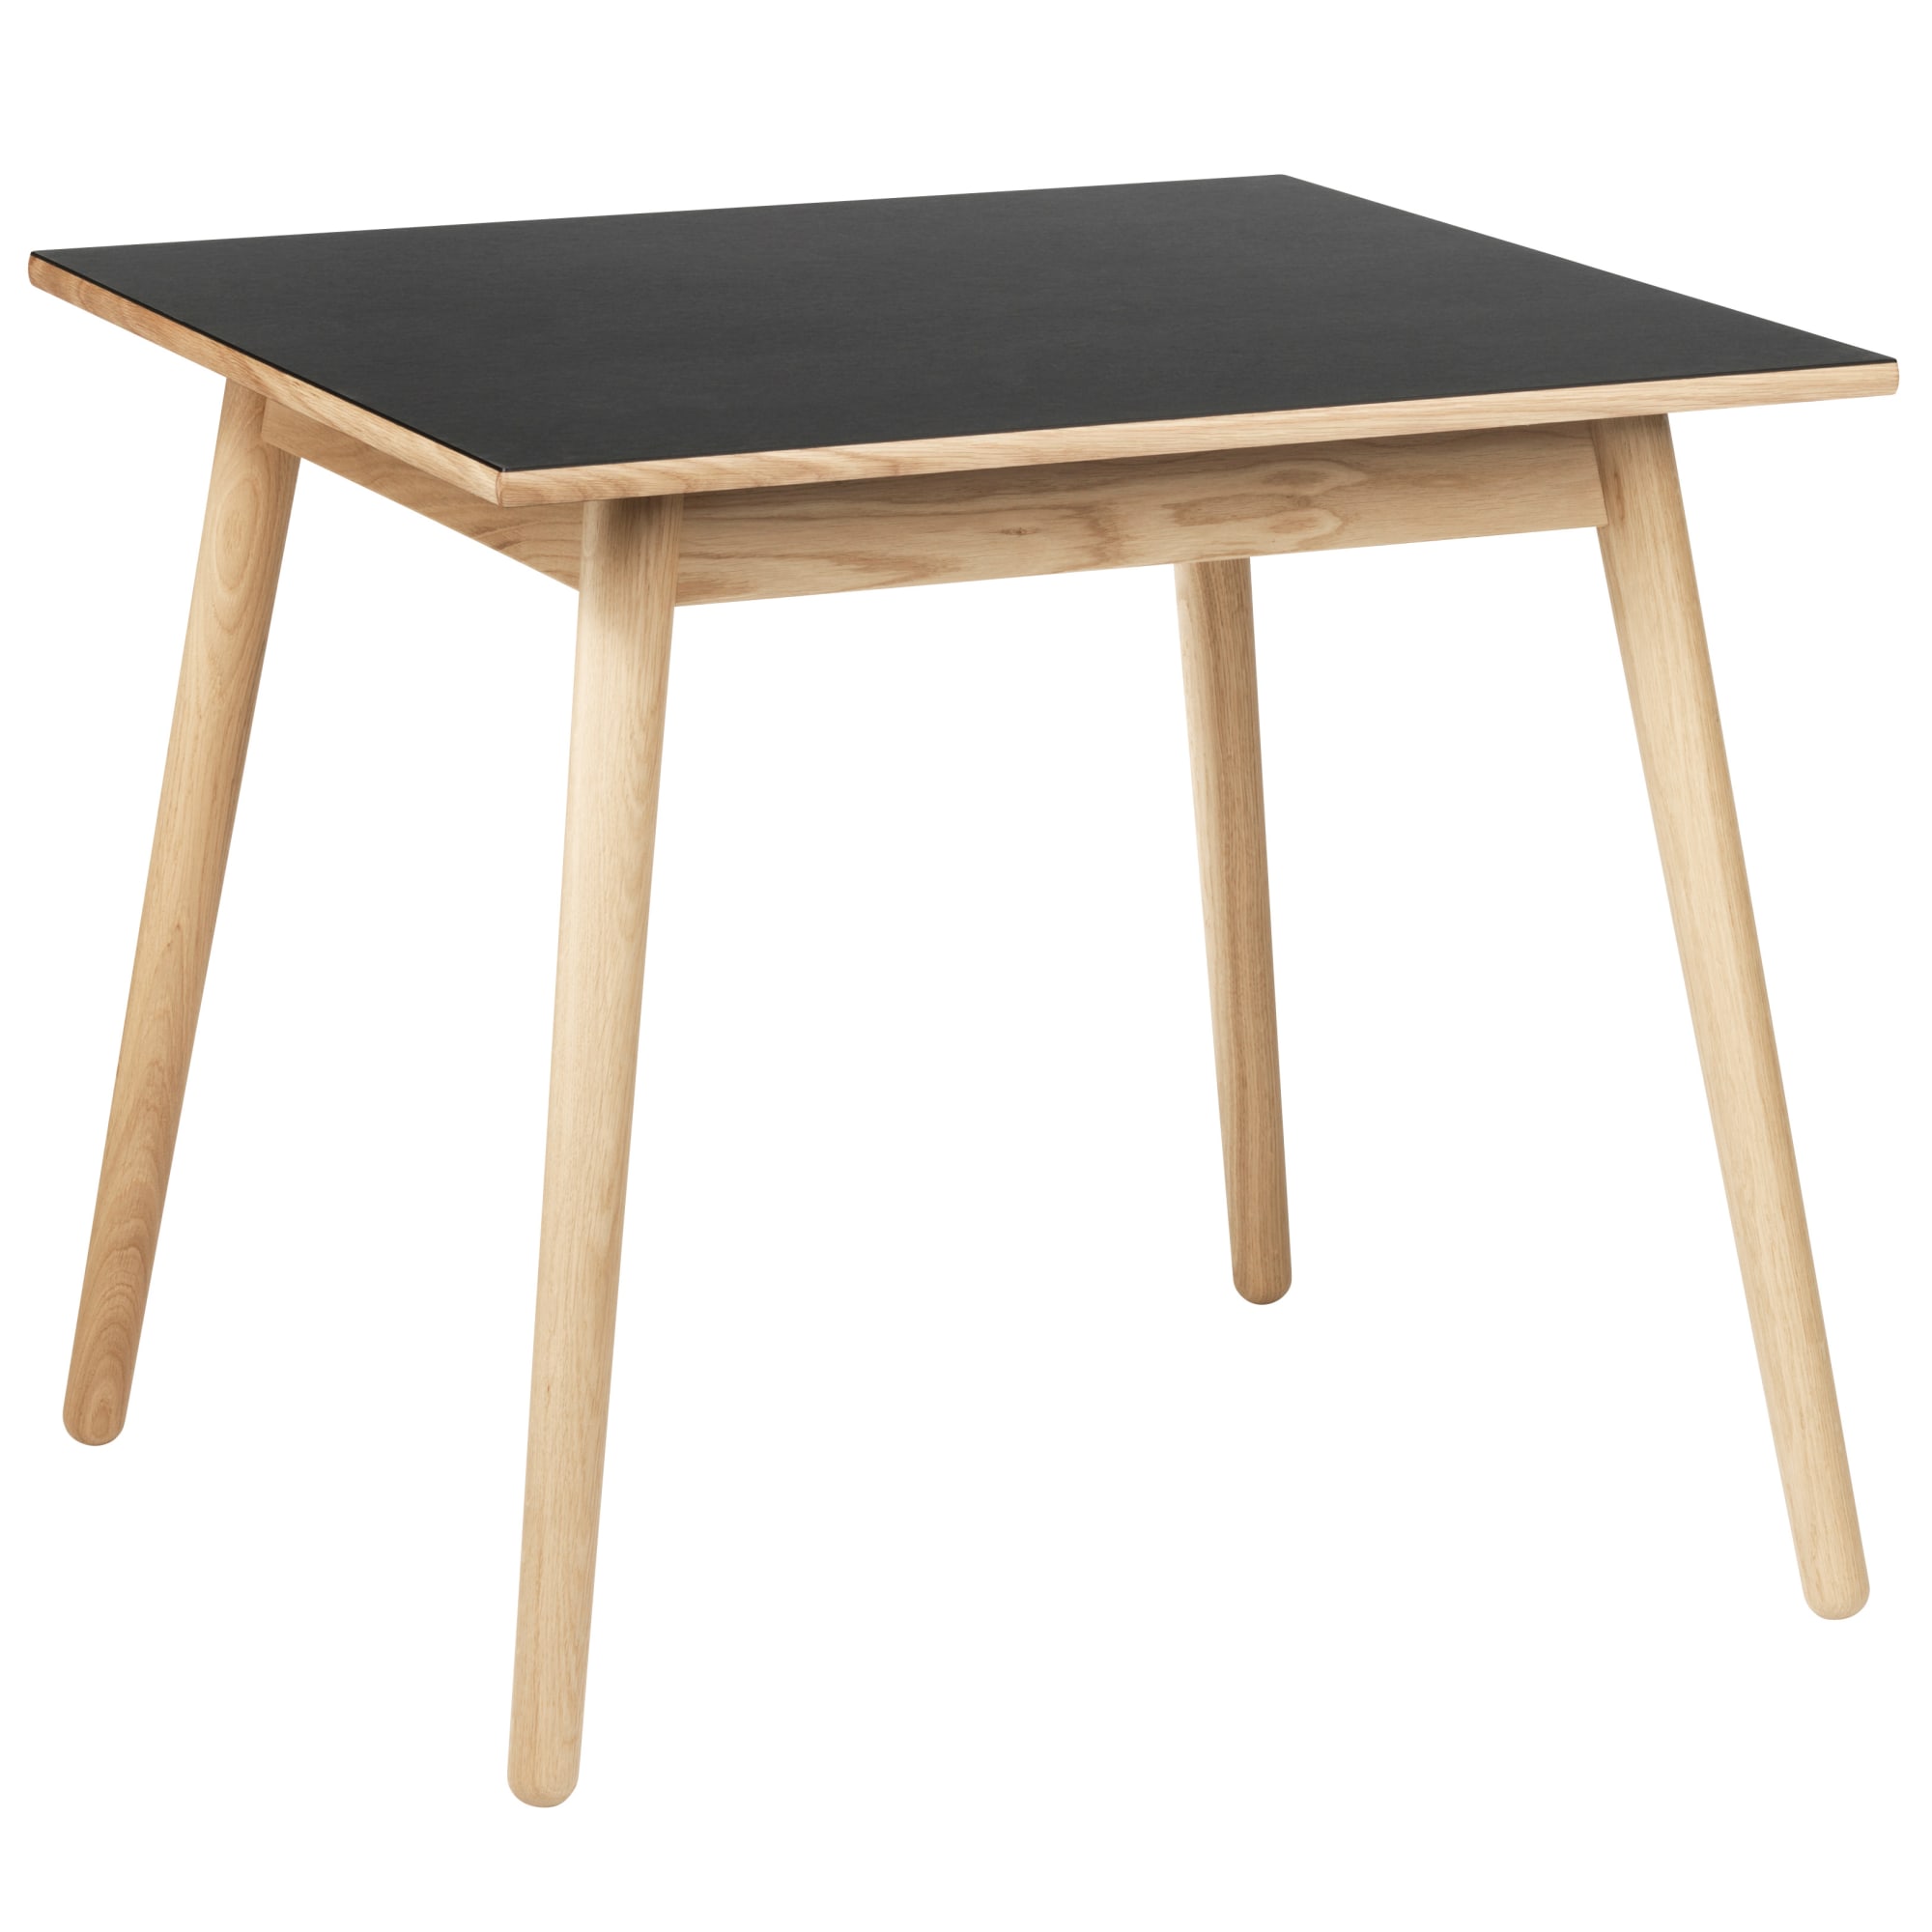 FDB Møbler - Smuk minimalisme på lidt plads